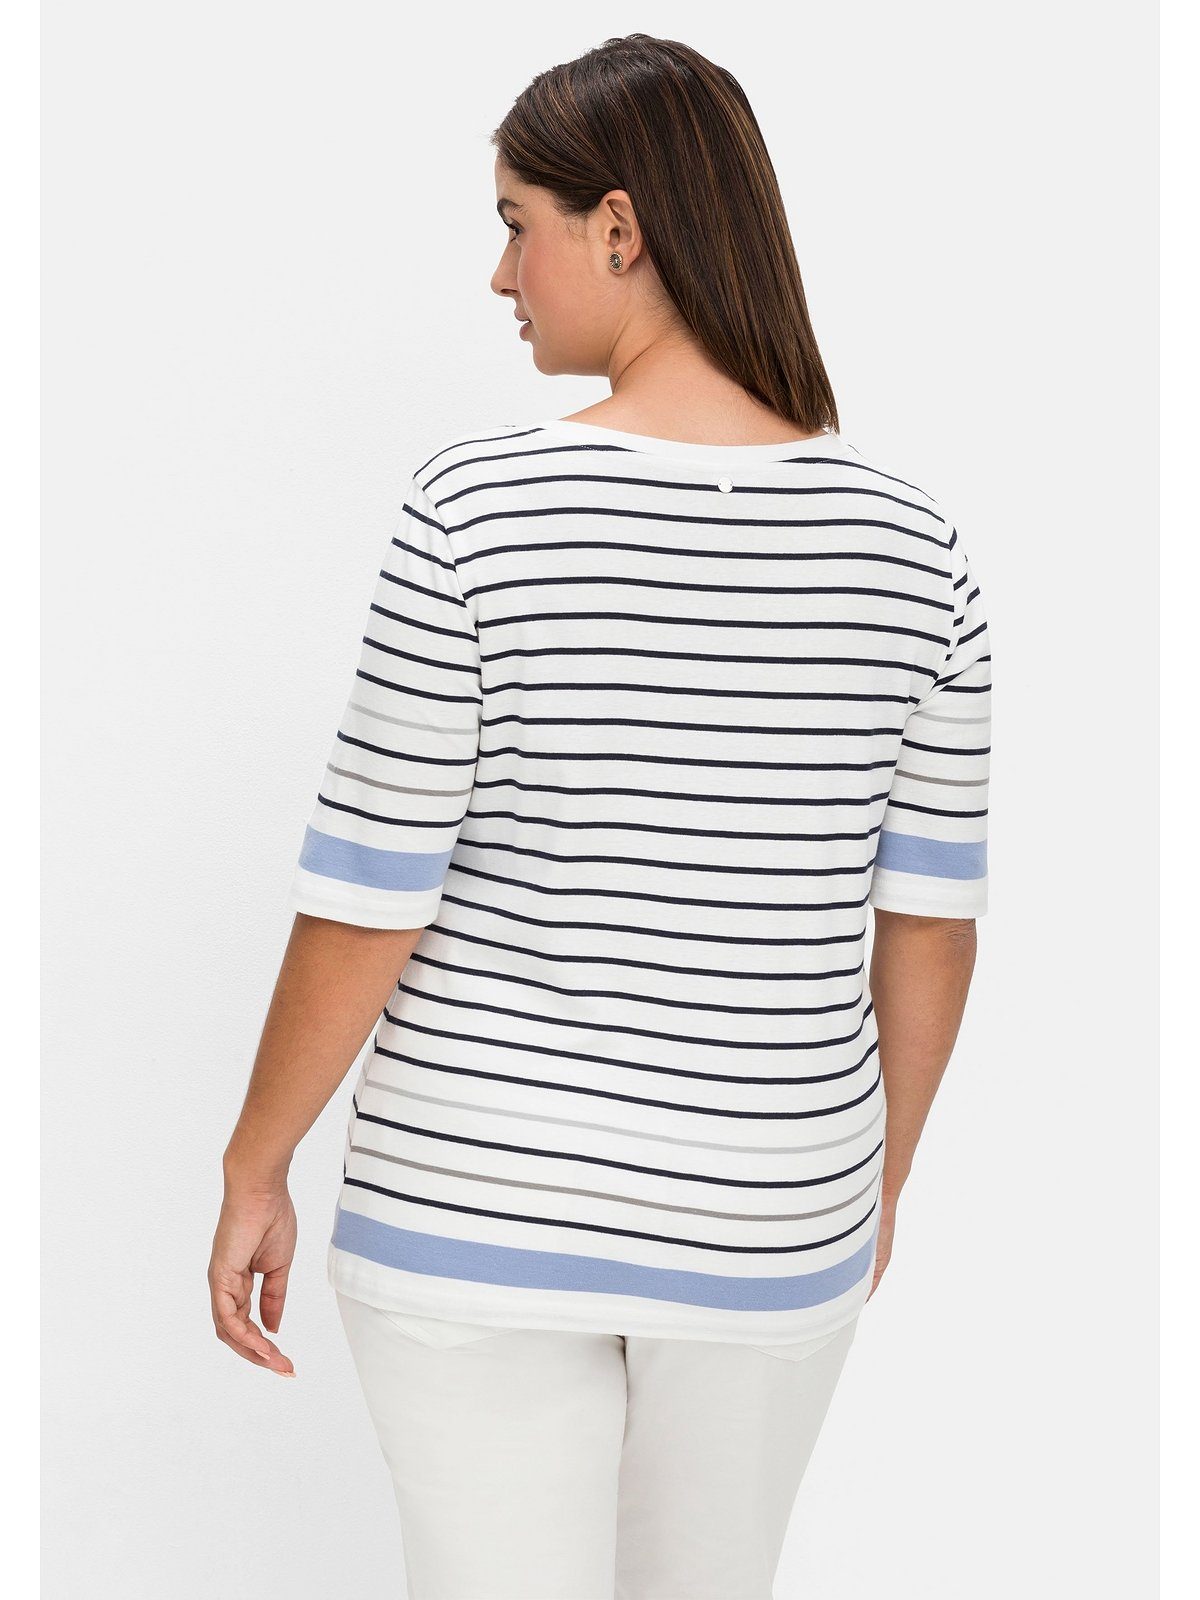 Sheego T-Shirt Große Größen in leicht tailliertem Schnitt, in Rippqualität